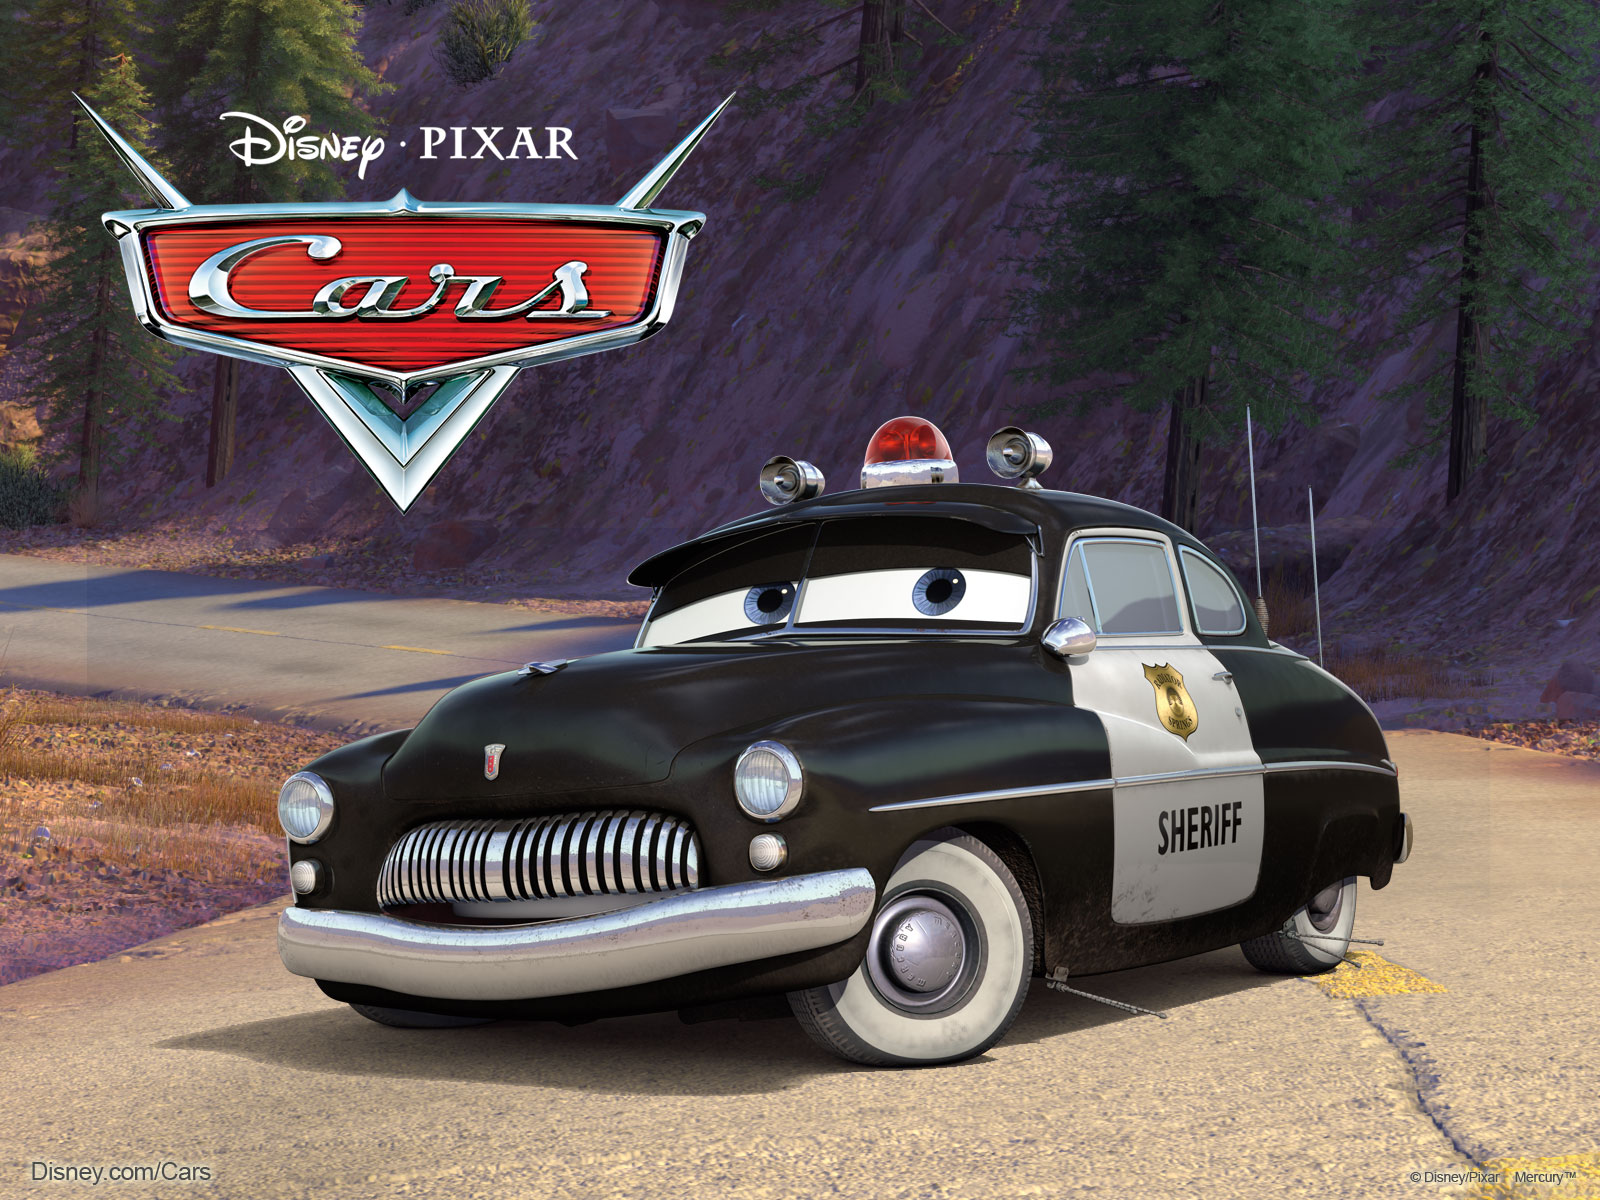 Cop Car Movie Wallpaper - WallpaperSafari